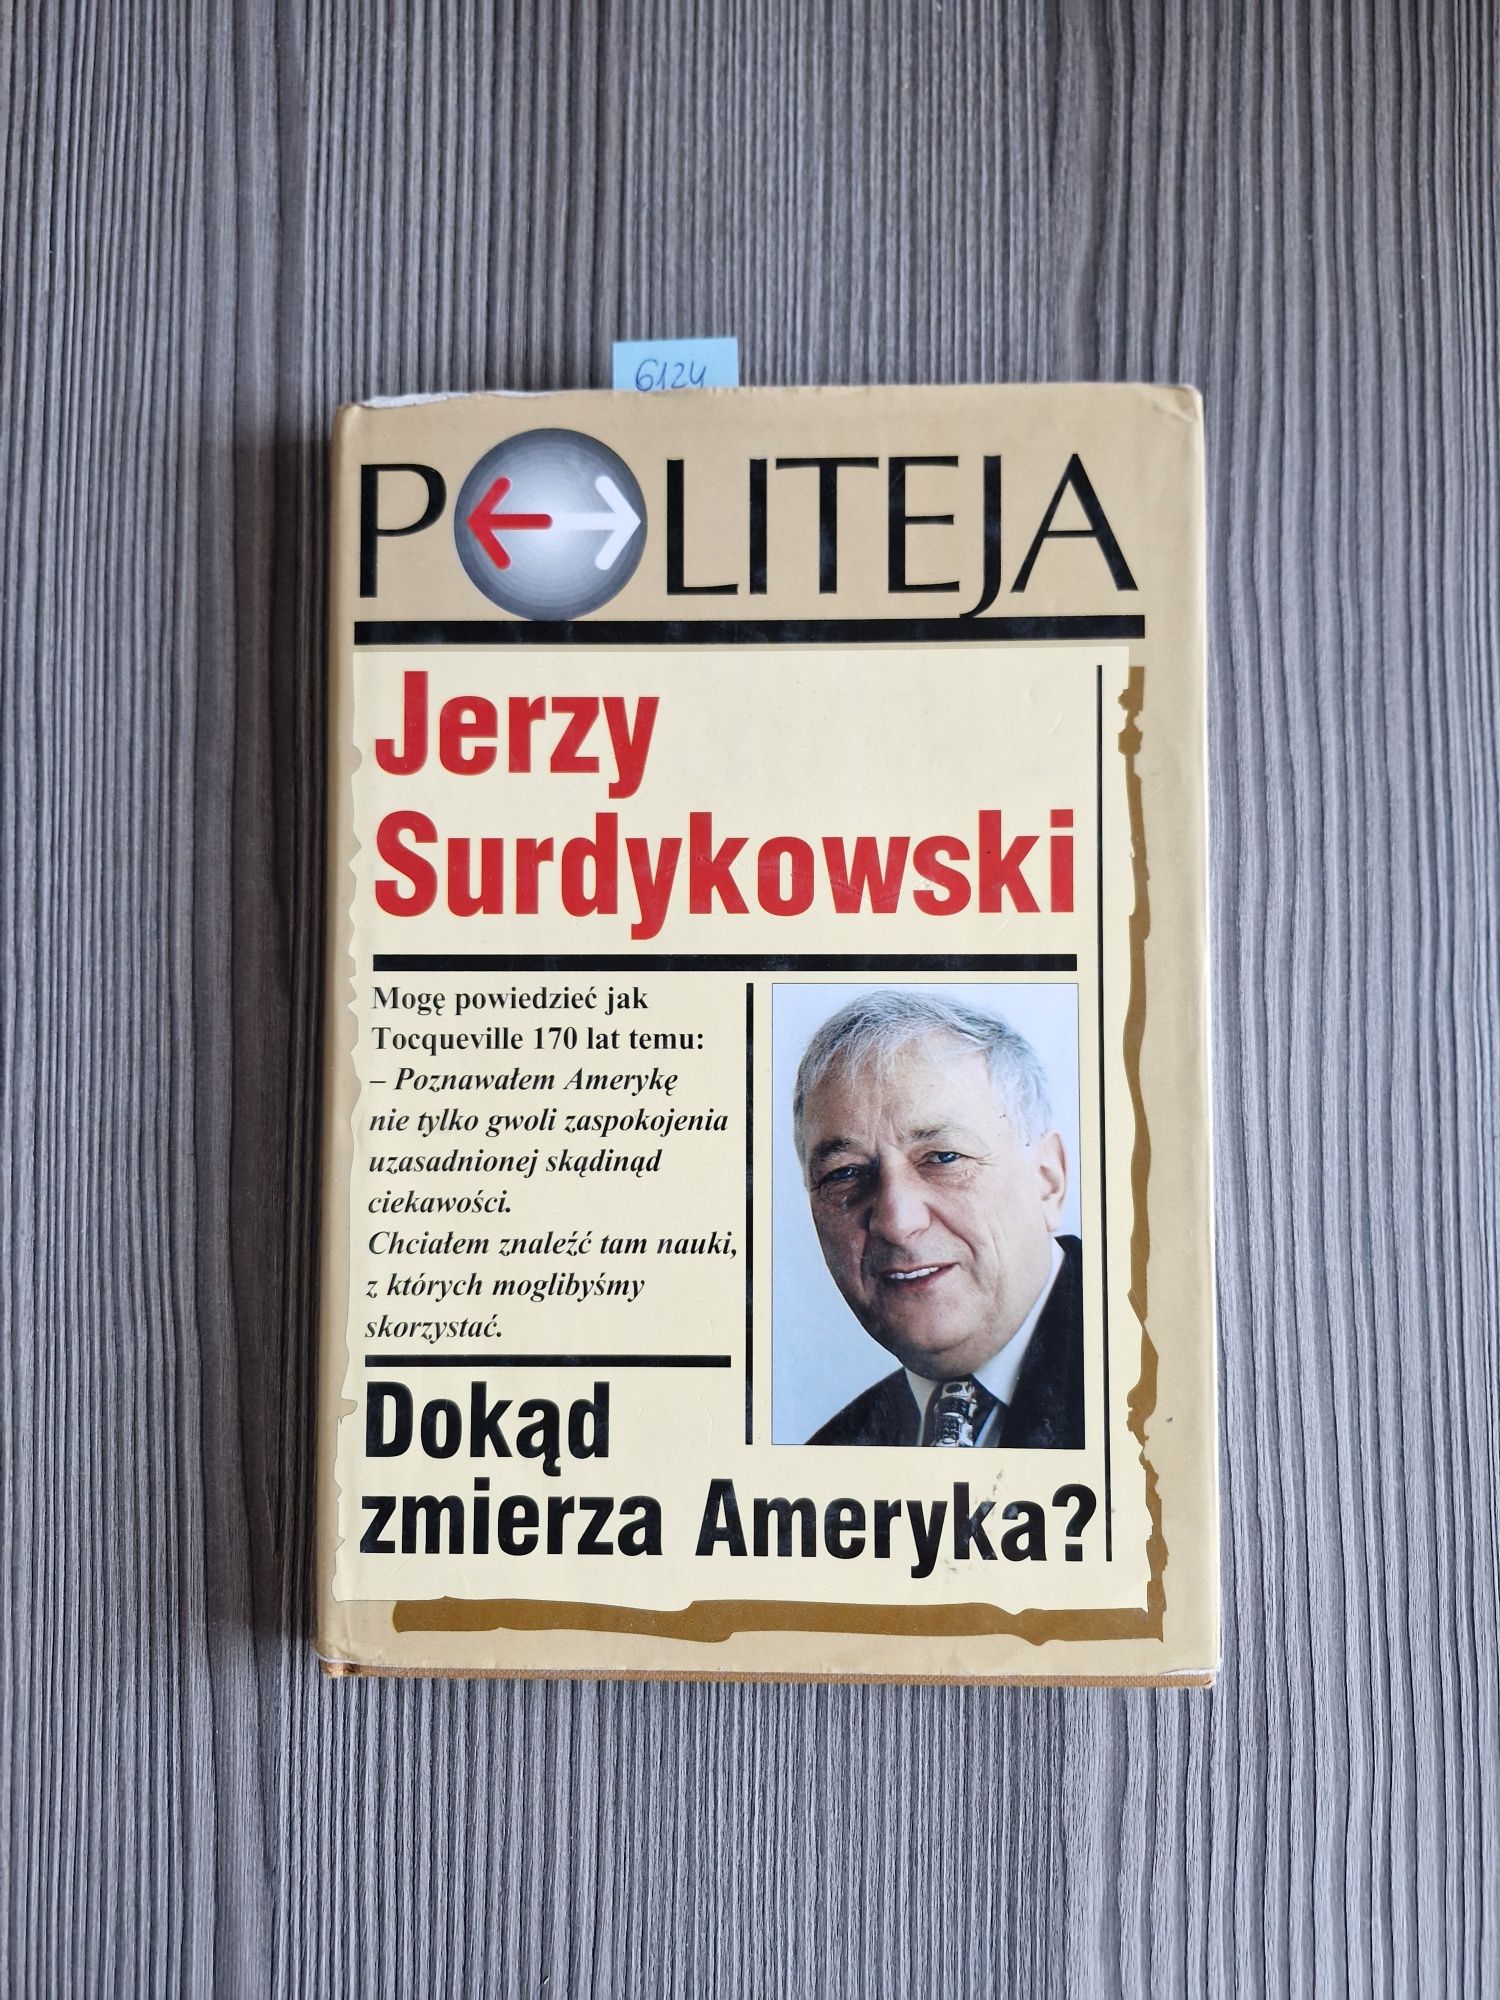 6124. "Dokąd zmierza Ameryka" Jerzy Surdukowski